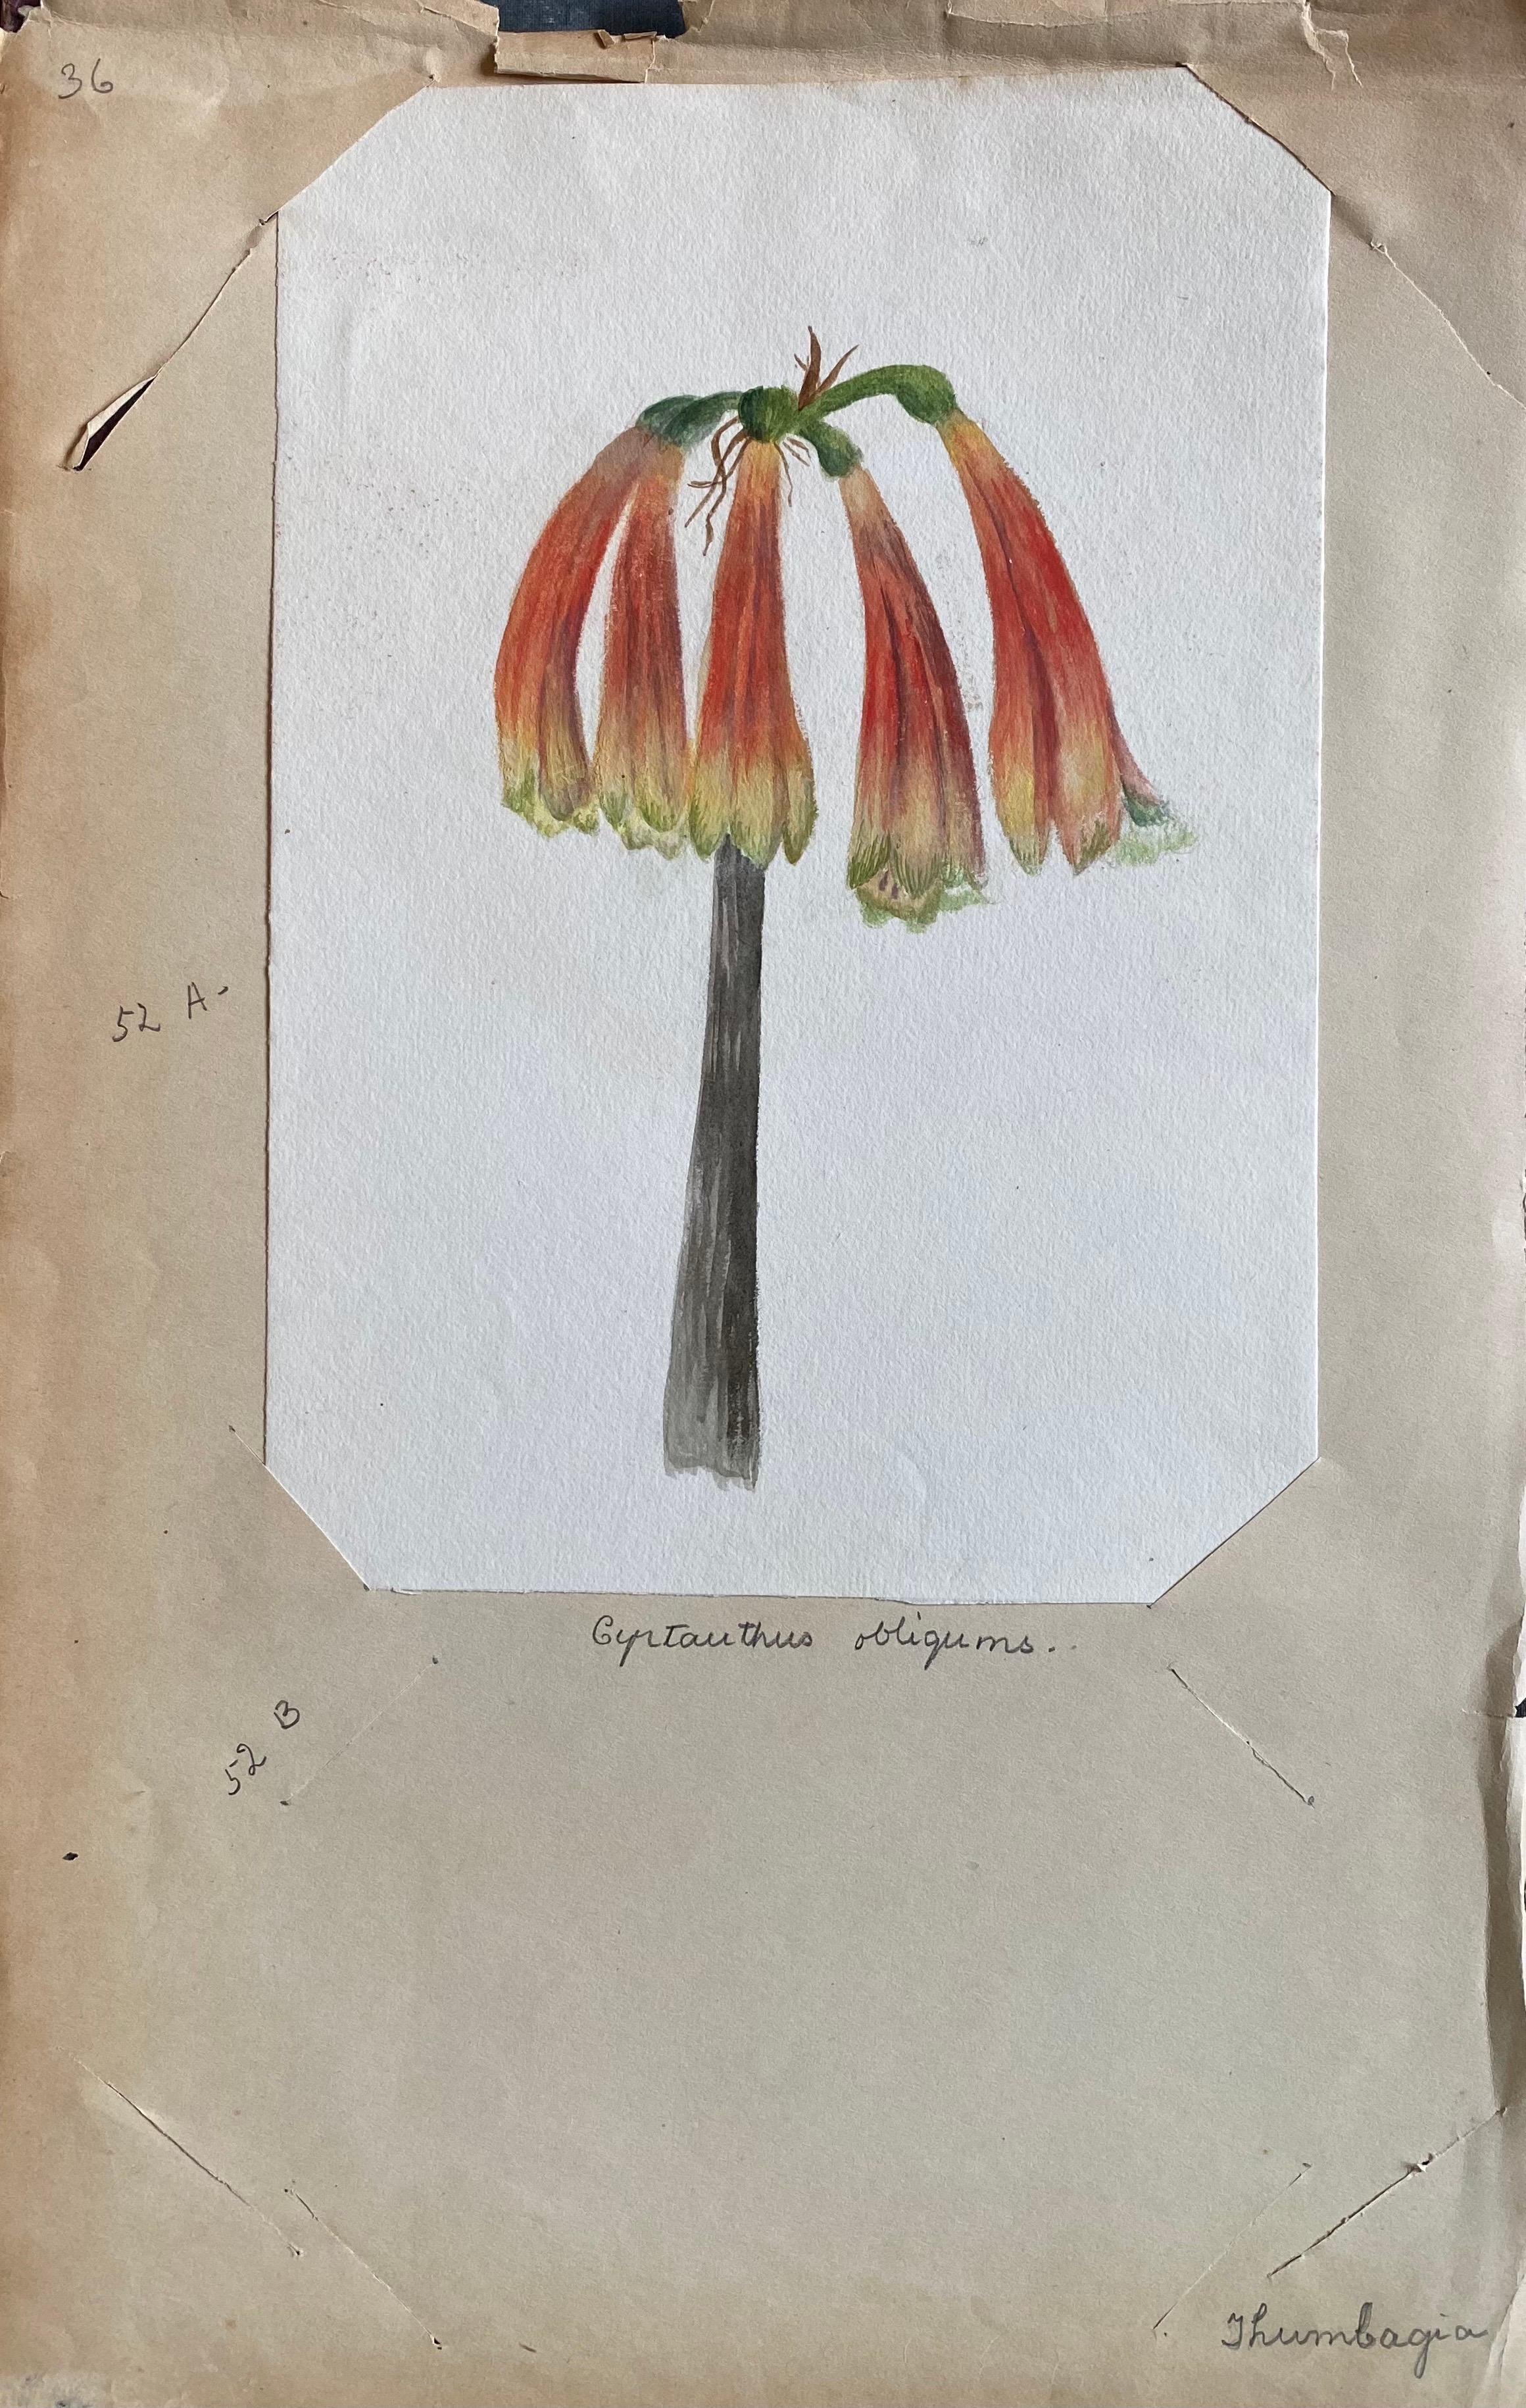 Ein sehr schönes originales englisches botanisches Aquarell, das diese schöne Darstellung einer Blume/Pflanze zeigt. Das Werk stammt aus einer Privatsammlung in Surrey, England, und war Teil eines Albums mit Werken, die der Künstler in den frühen